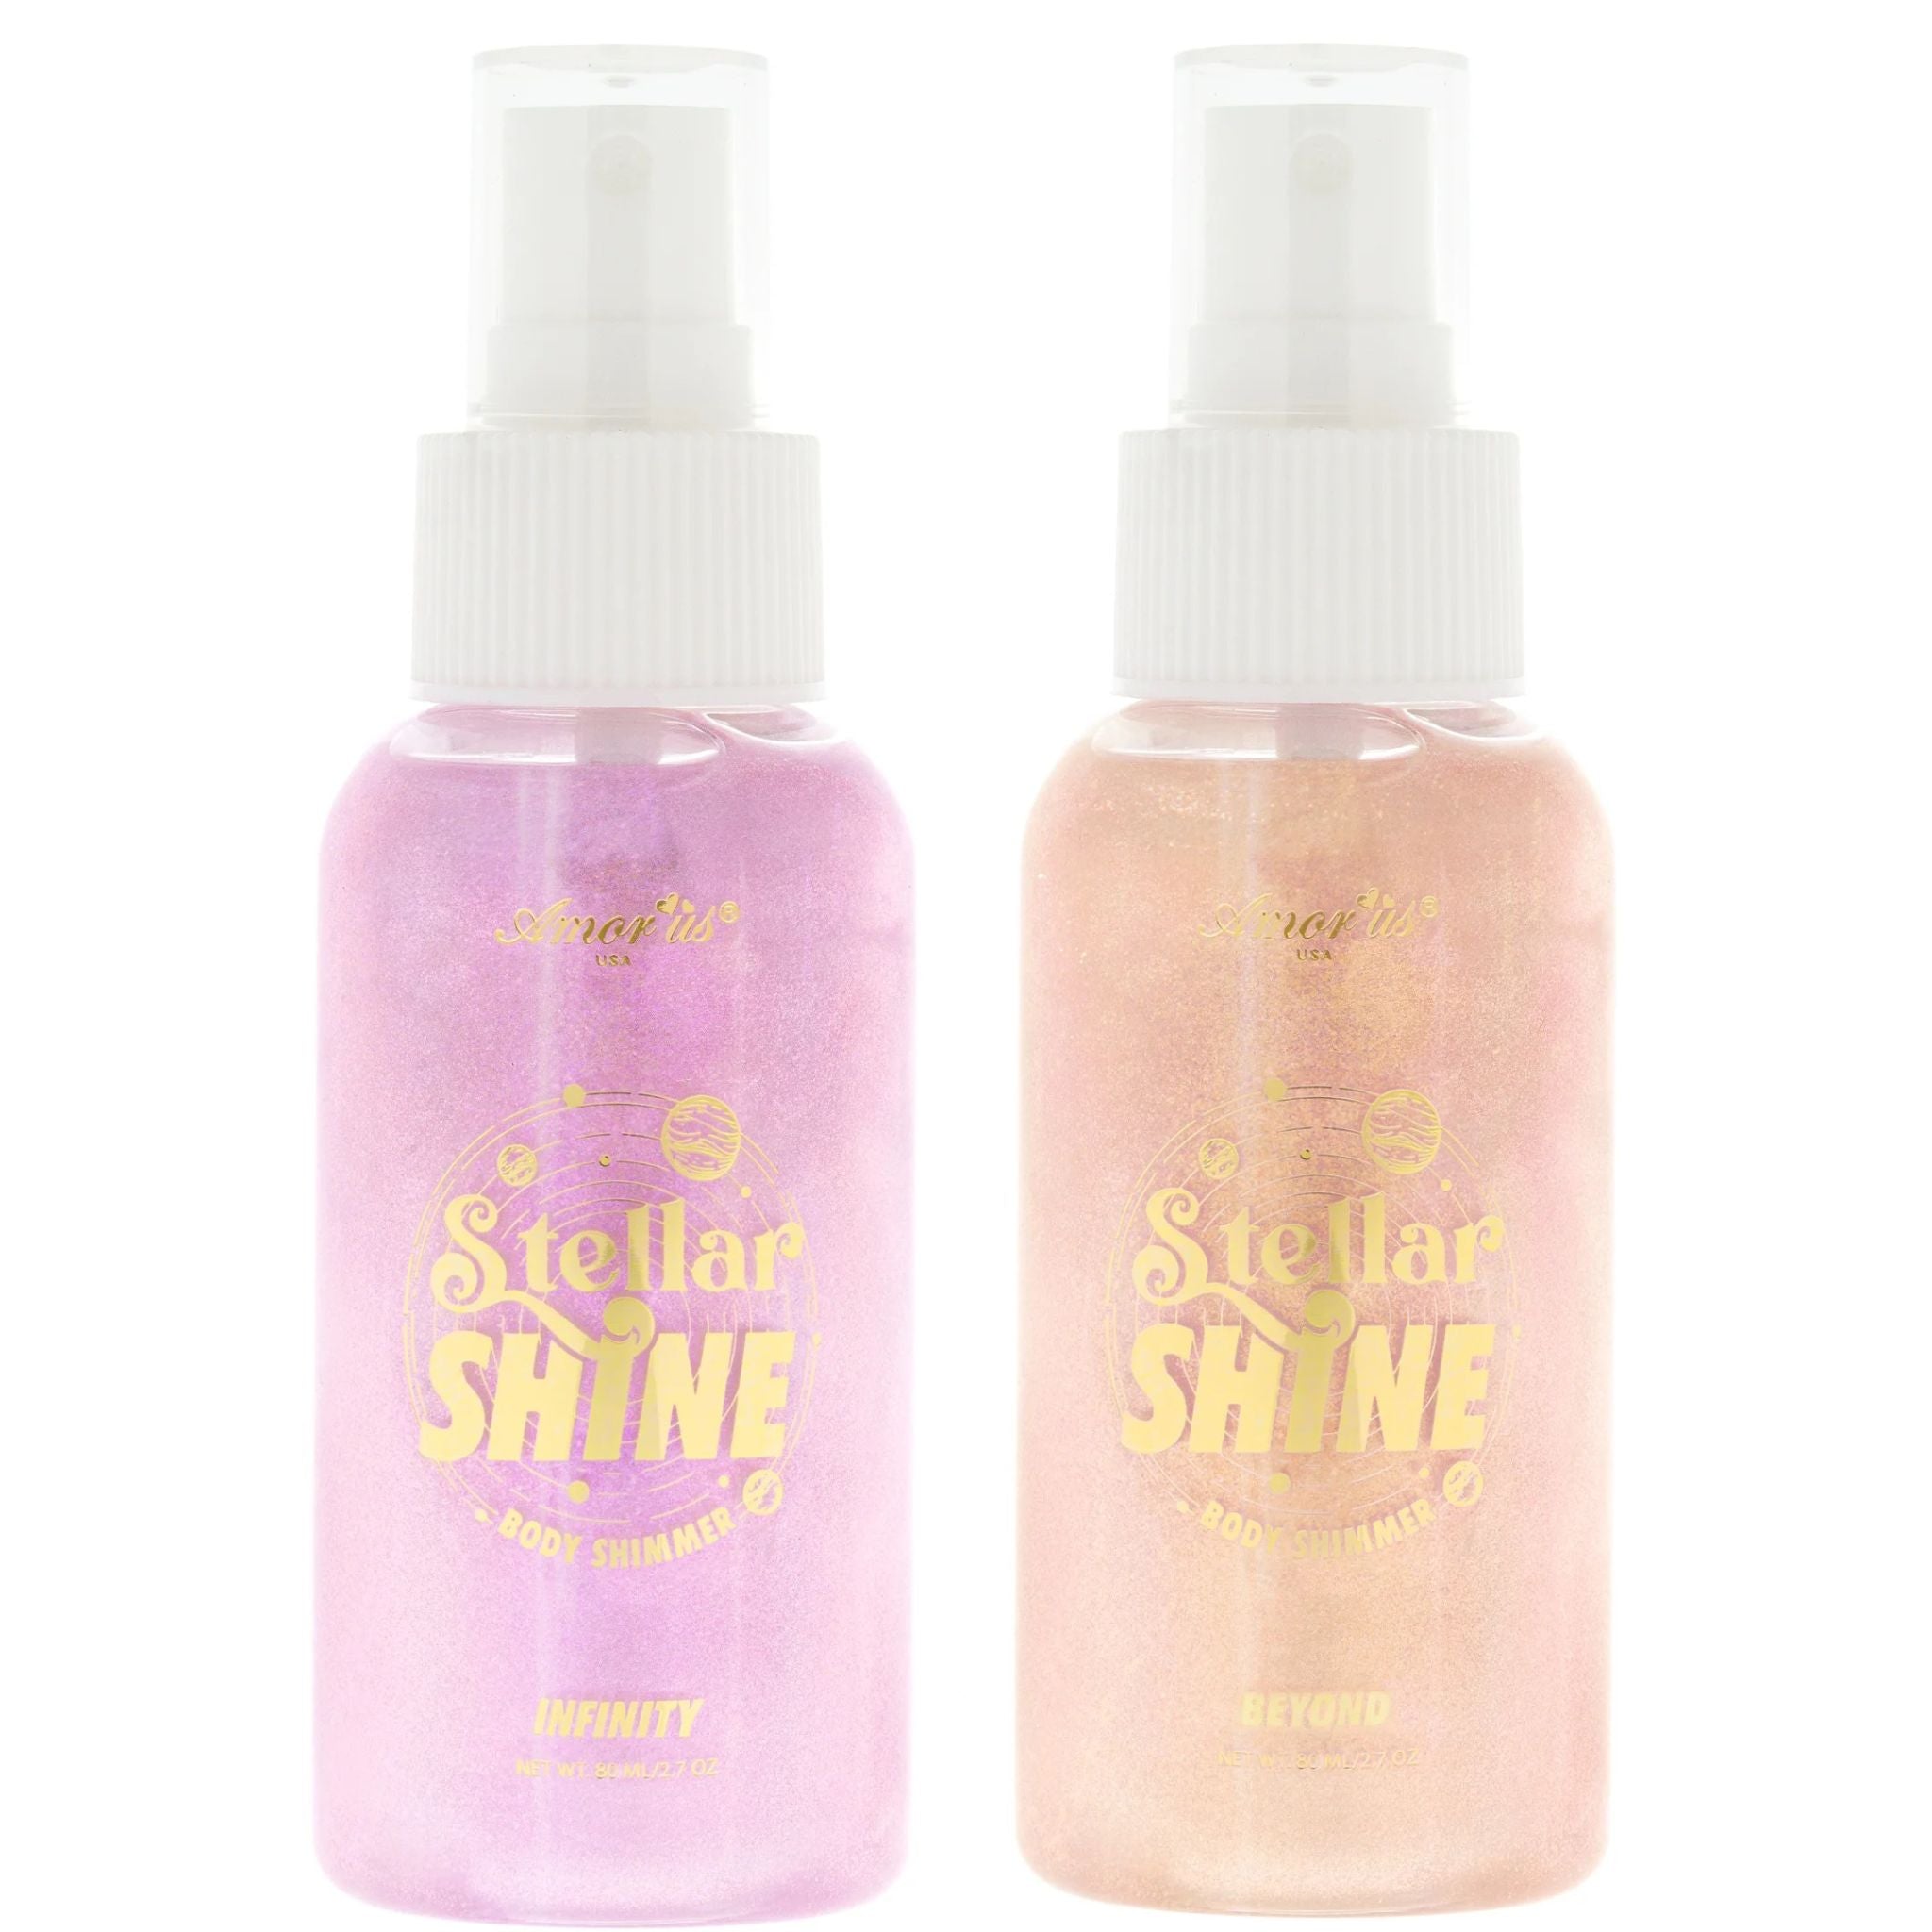 Stellar Shine, Body Shimmer Spray Set